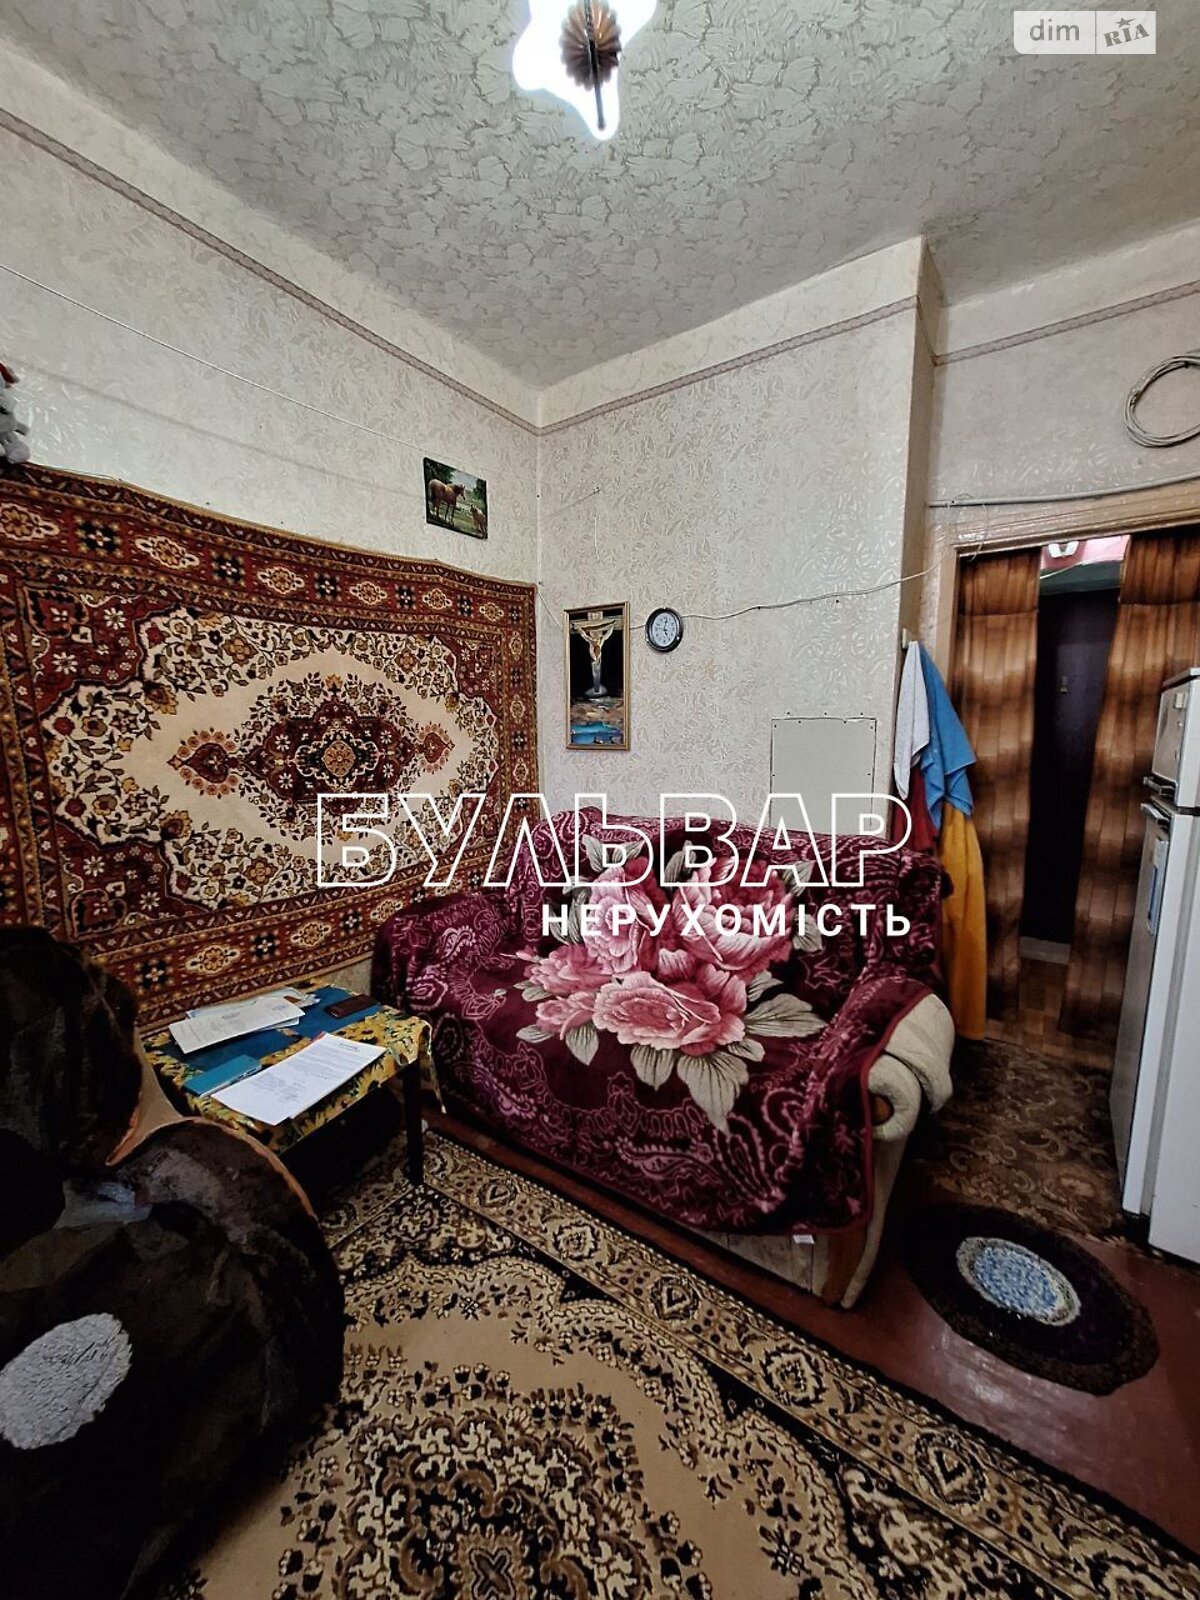 Кімната в Харкові на вул. Біблика 1 в районі ХТЗ на продаж фото 1